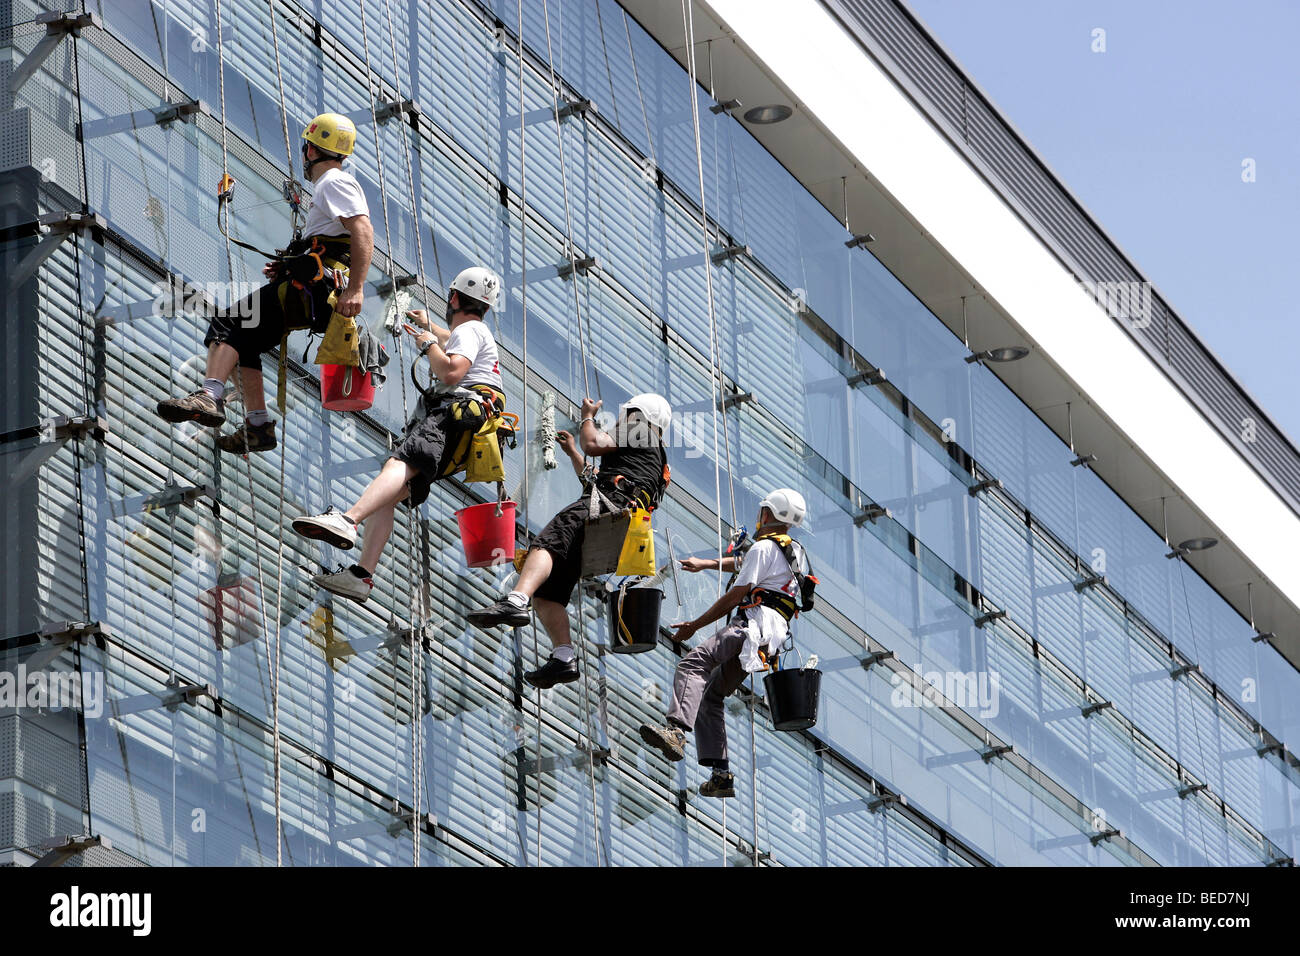 Nettoyage de vitres, encordés et sécurisés comme les alpinistes, nettoyage vitre façade d'un immeuble de bureaux, au Luxembourg, Europe Banque D'Images